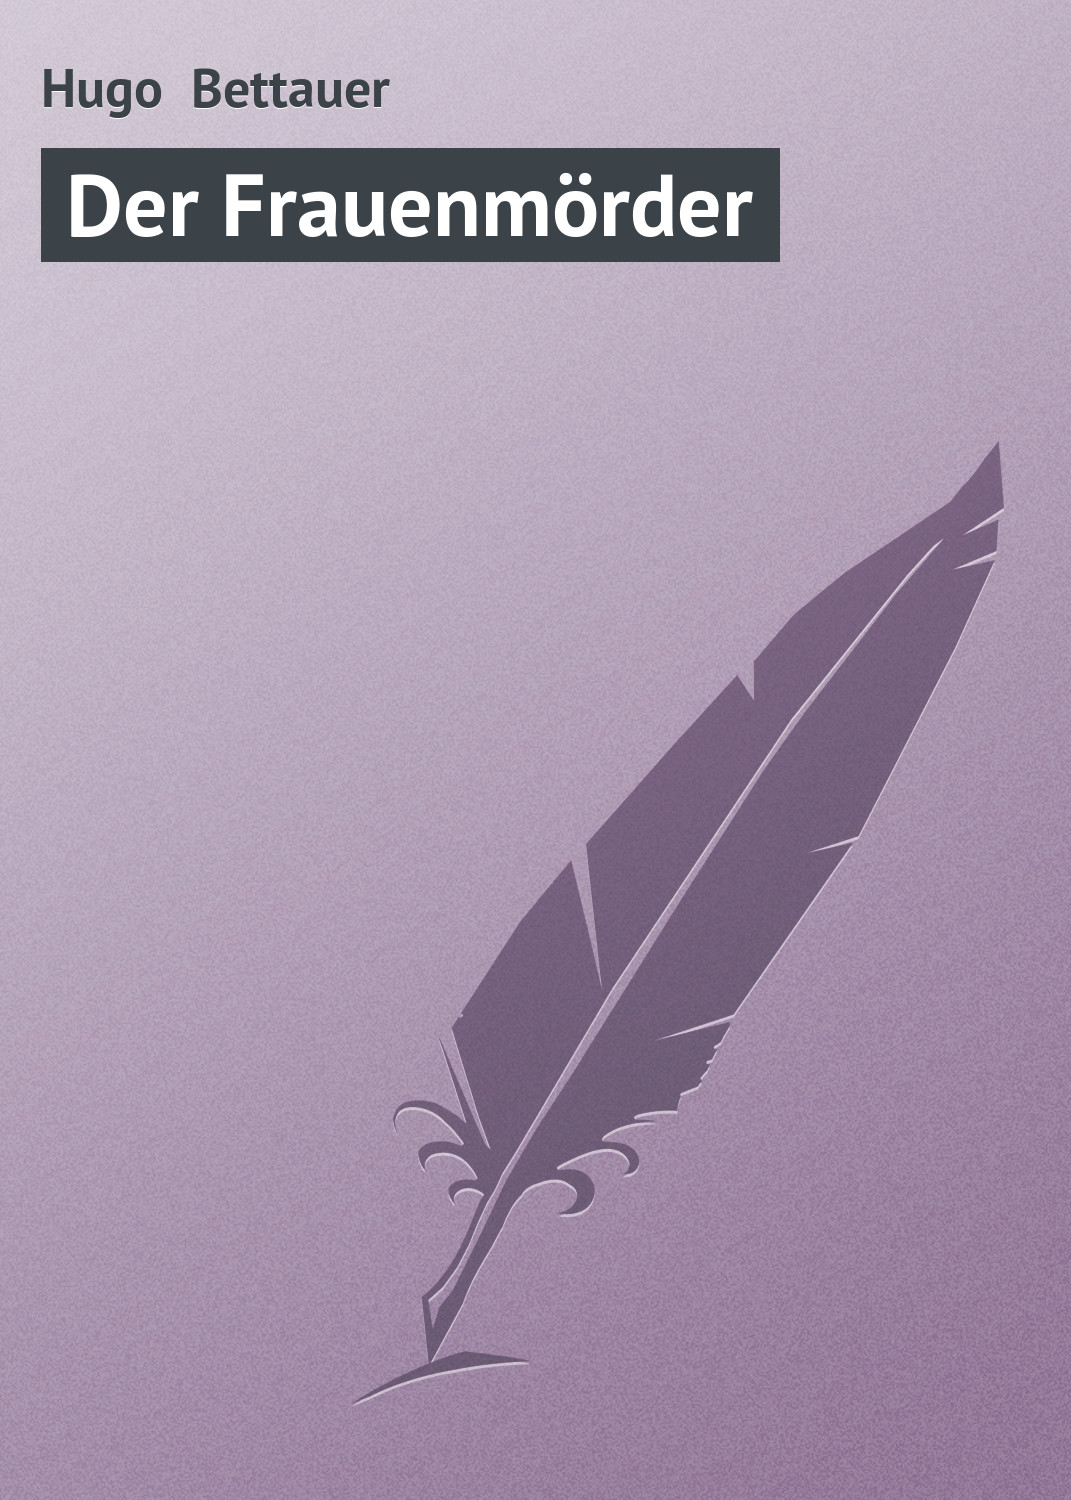 Книга Der Frauenmörder из серии , созданная Hugo Bettauer, может относится к жанру Зарубежная старинная литература, Зарубежная классика. Стоимость электронной книги Der Frauenmörder с идентификатором 21105254 составляет 5.99 руб.